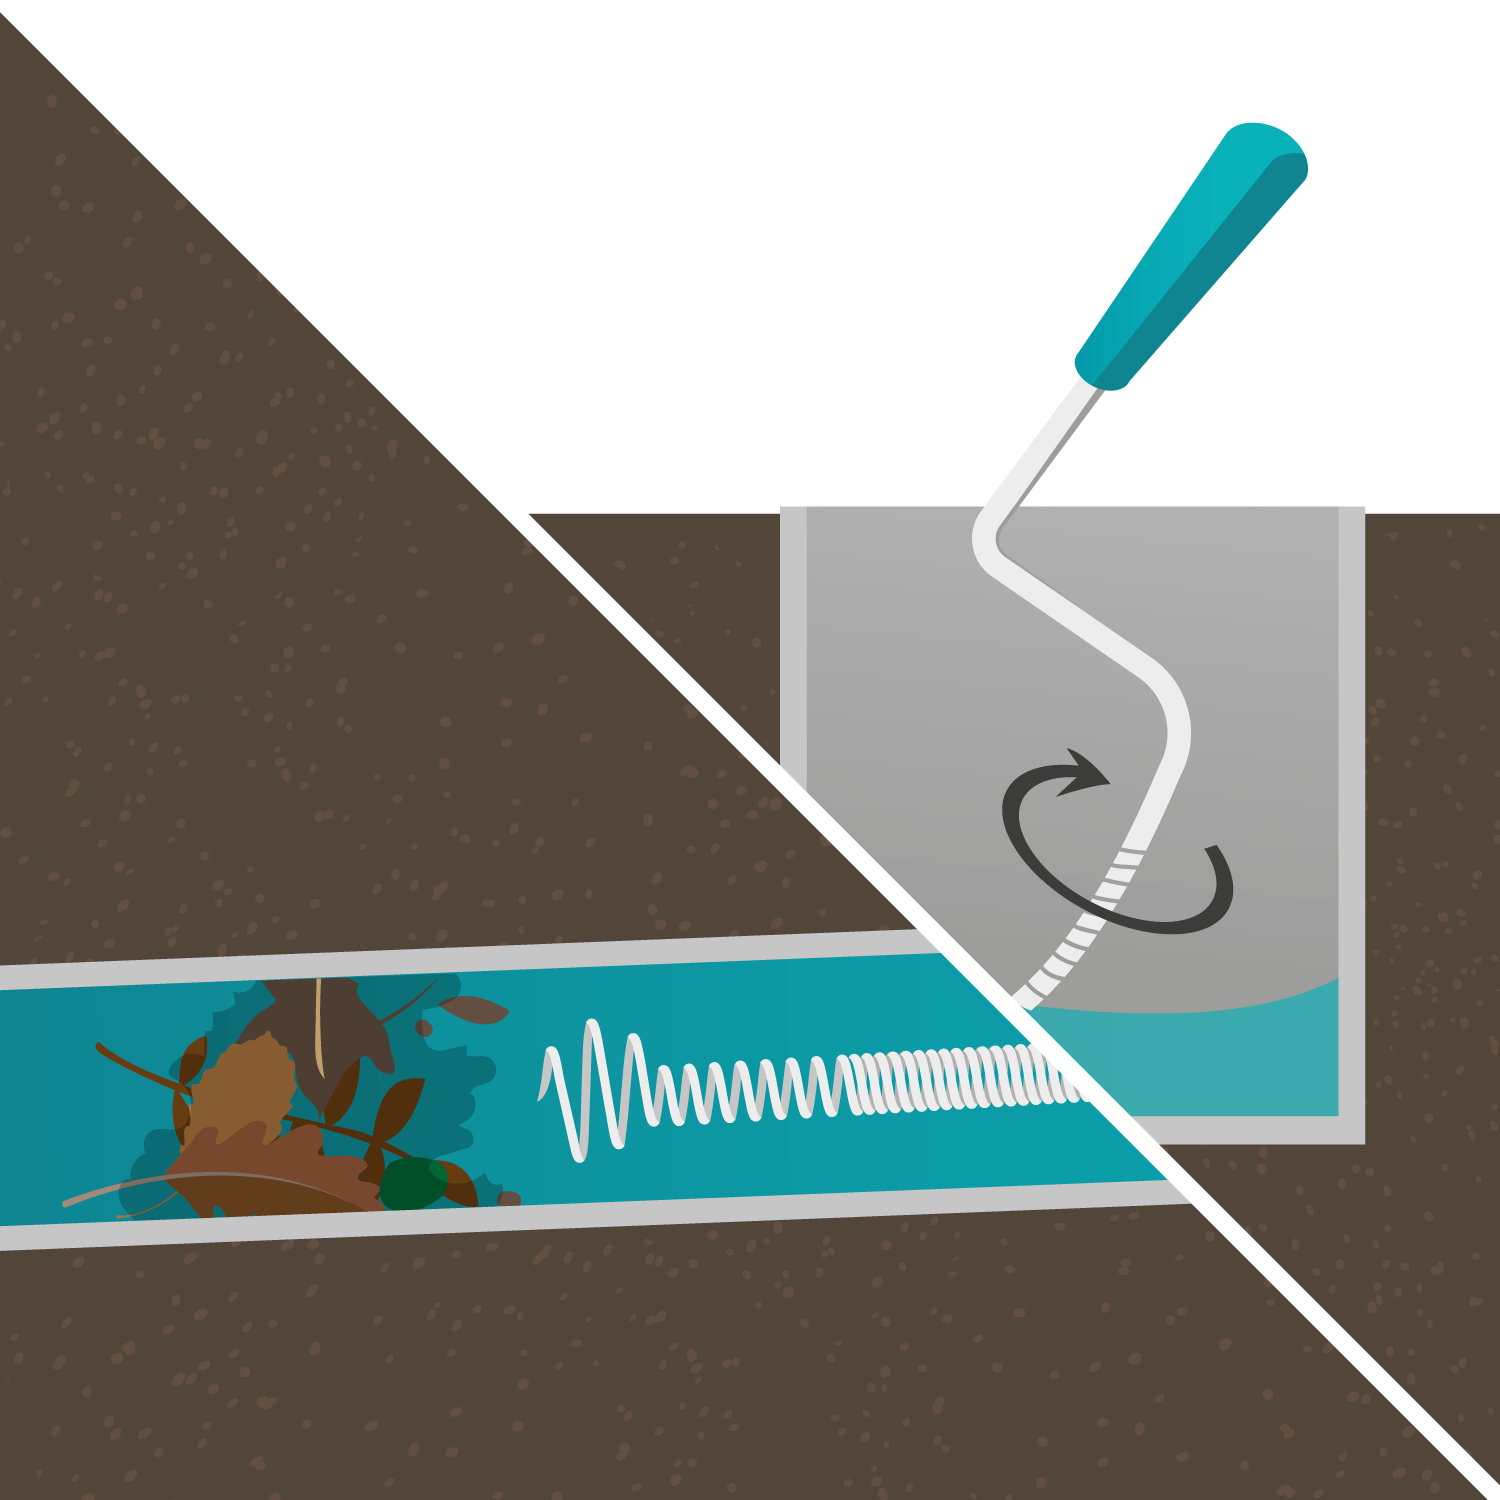 Guide plomberie - Déboucher une canalisation avec un furet